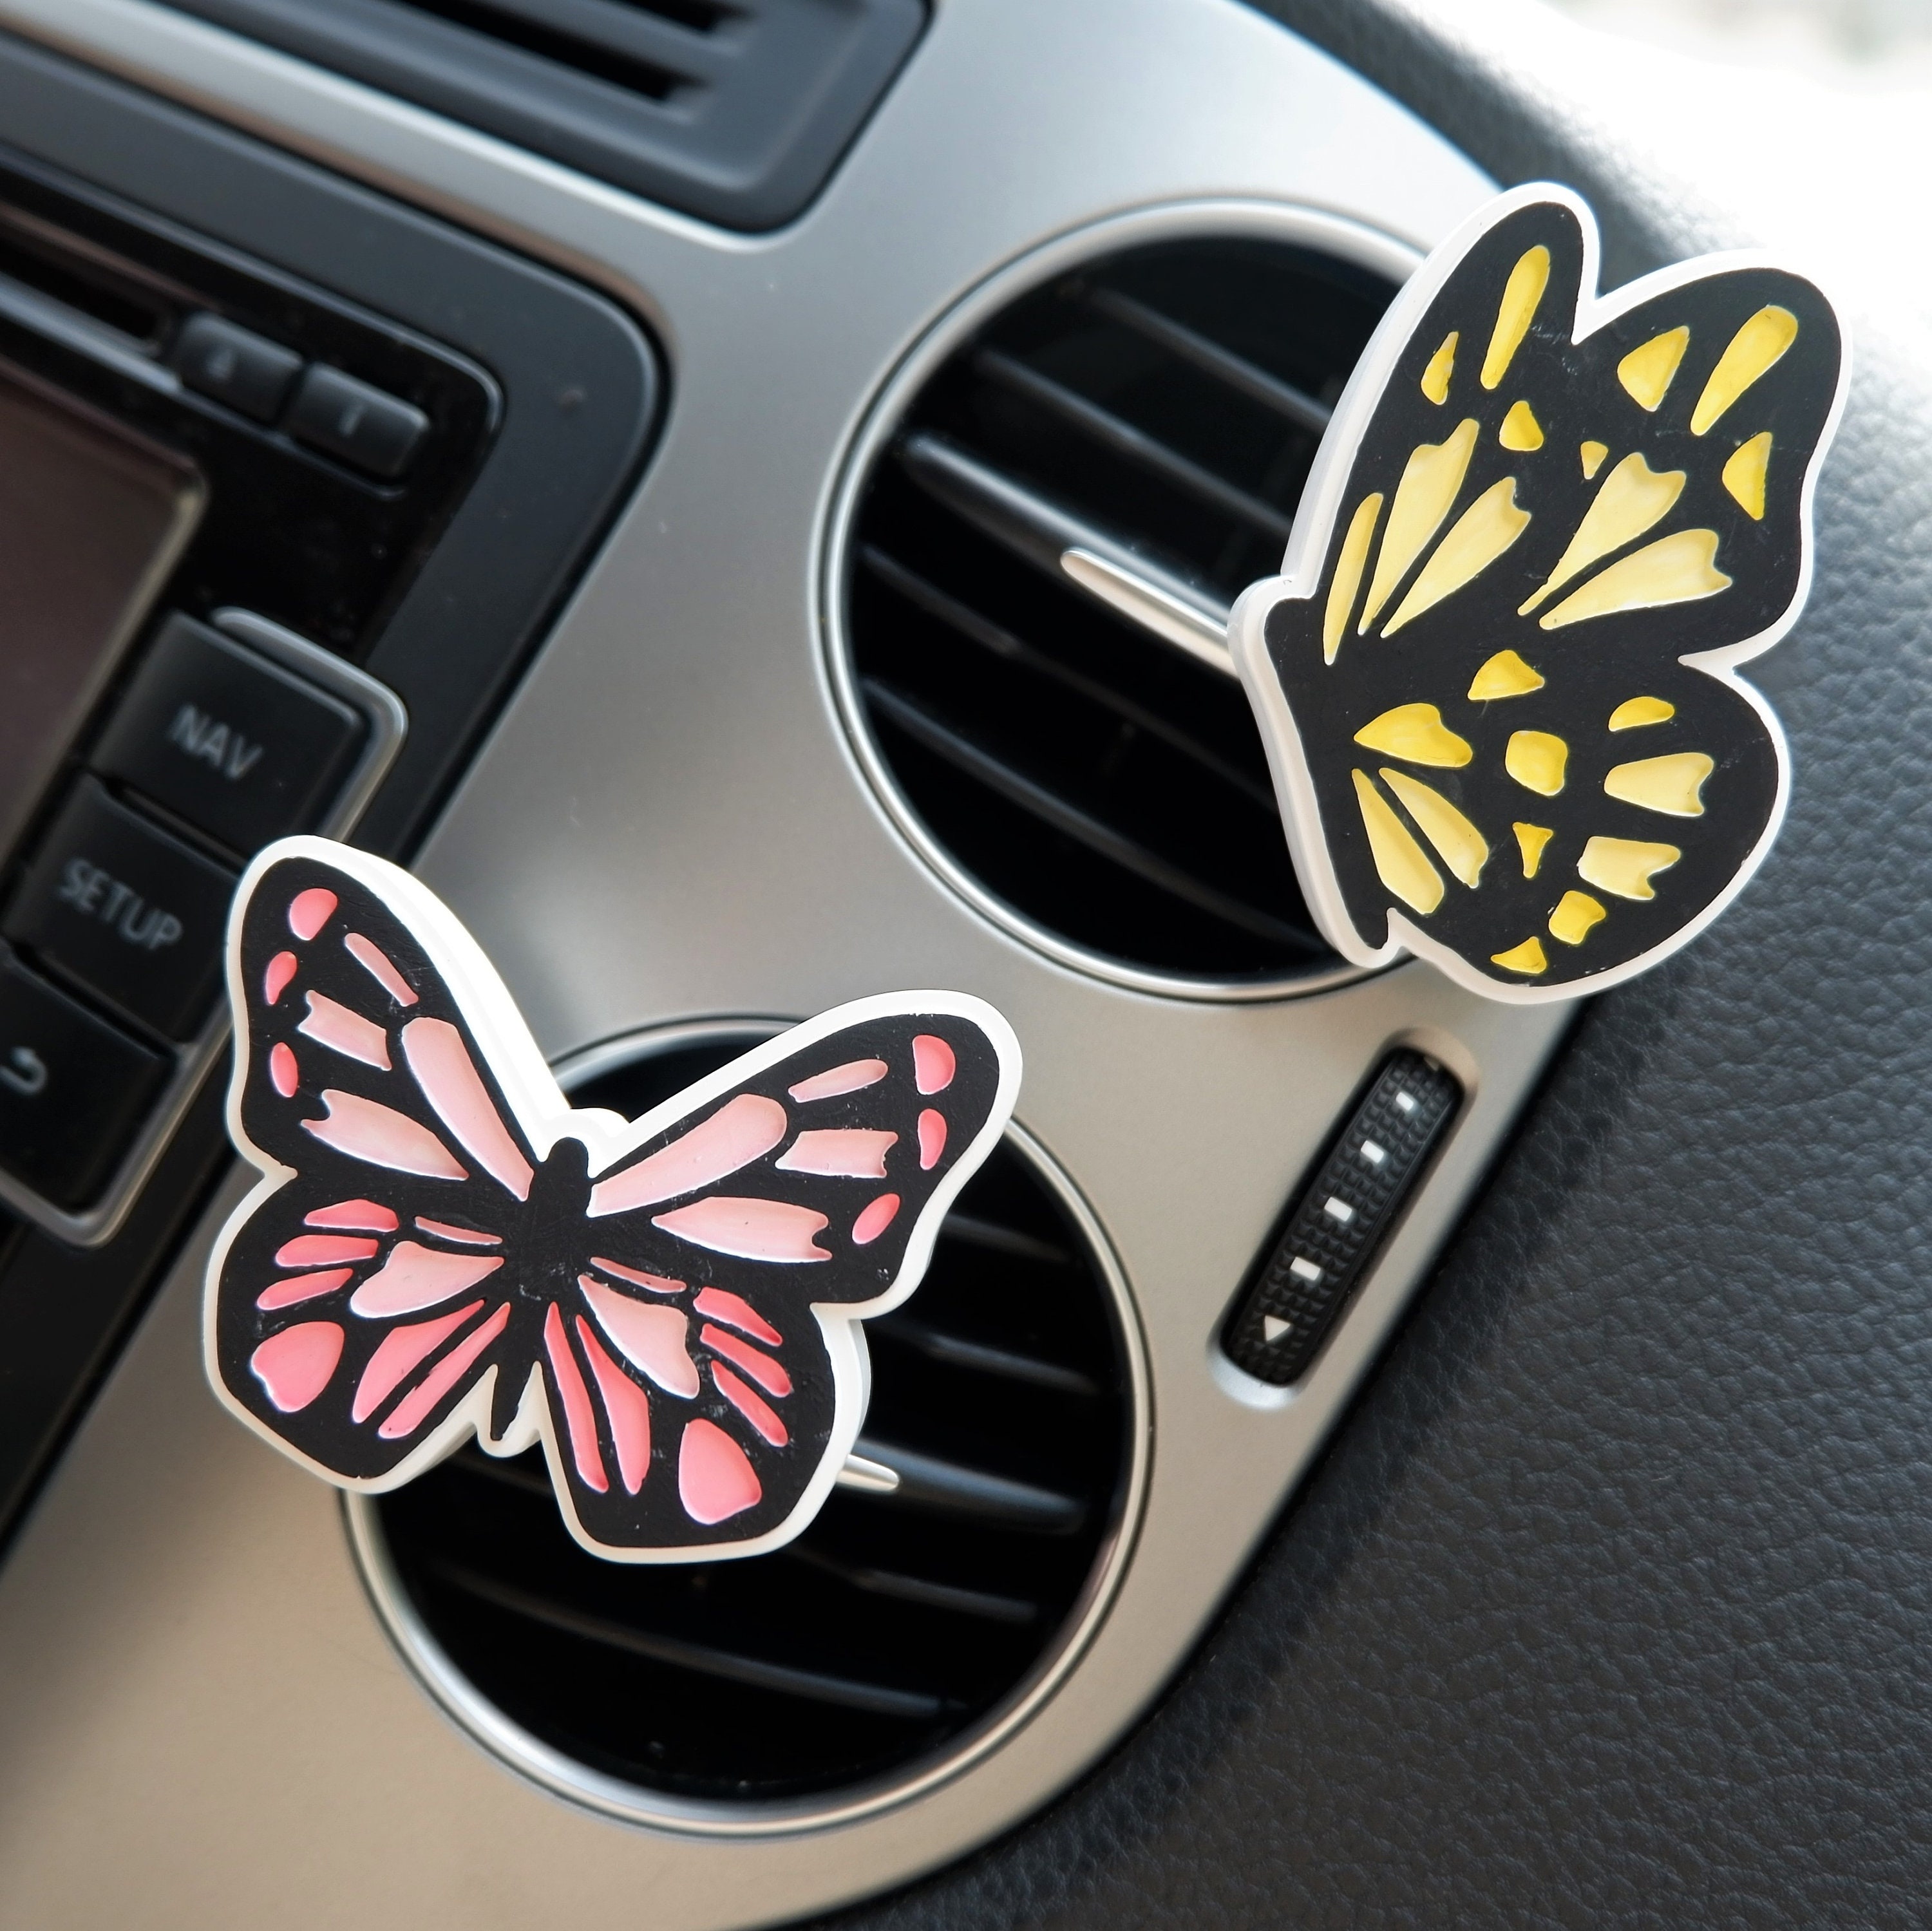 Auto Luftauslass Ornament mit Schmetterling Design